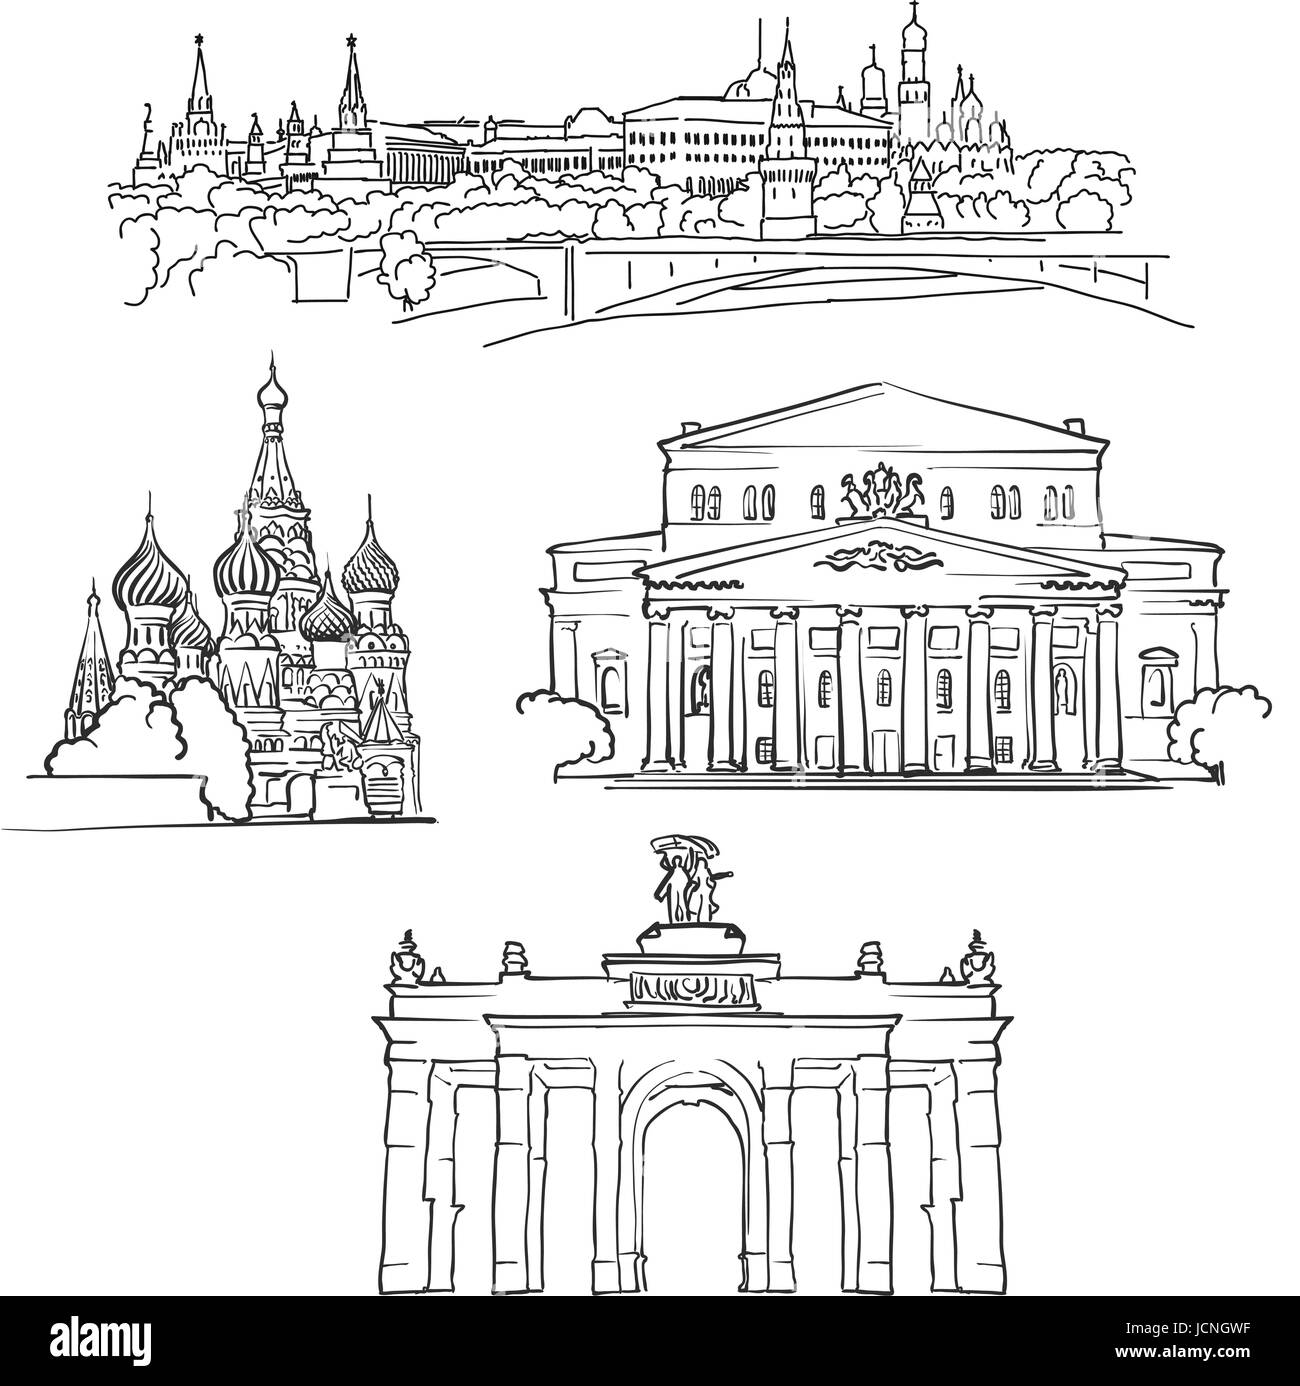 Moskau, Russland, berühmte Gebäude, Monochrom beschriebenen Reisen Sehenswürdigkeiten, skalierbare Vektor-Illustration Stock Vektor